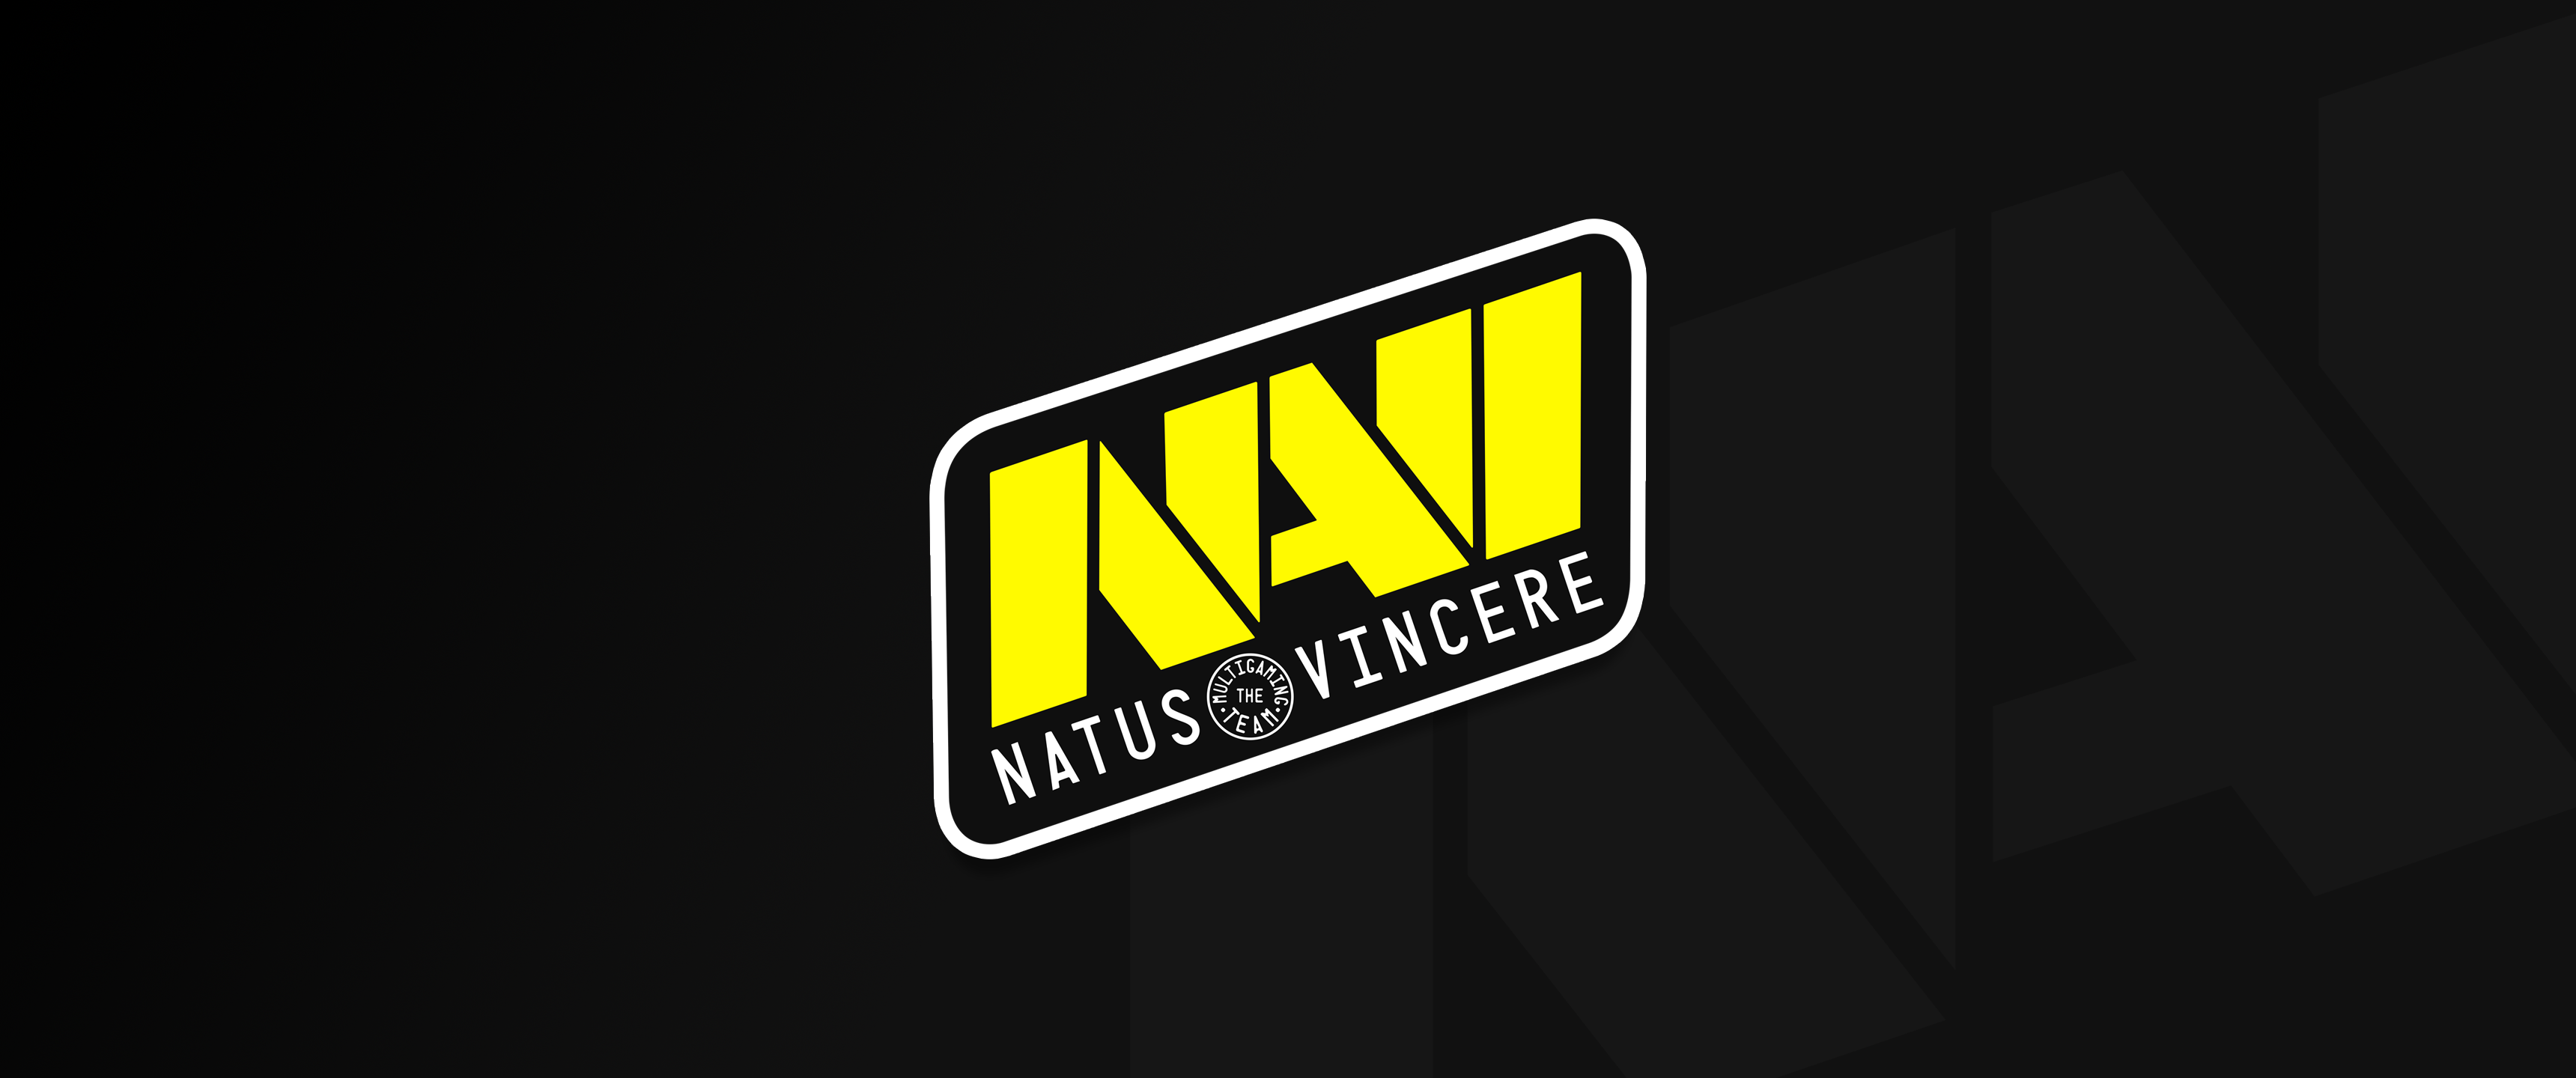 NV战队logo图片